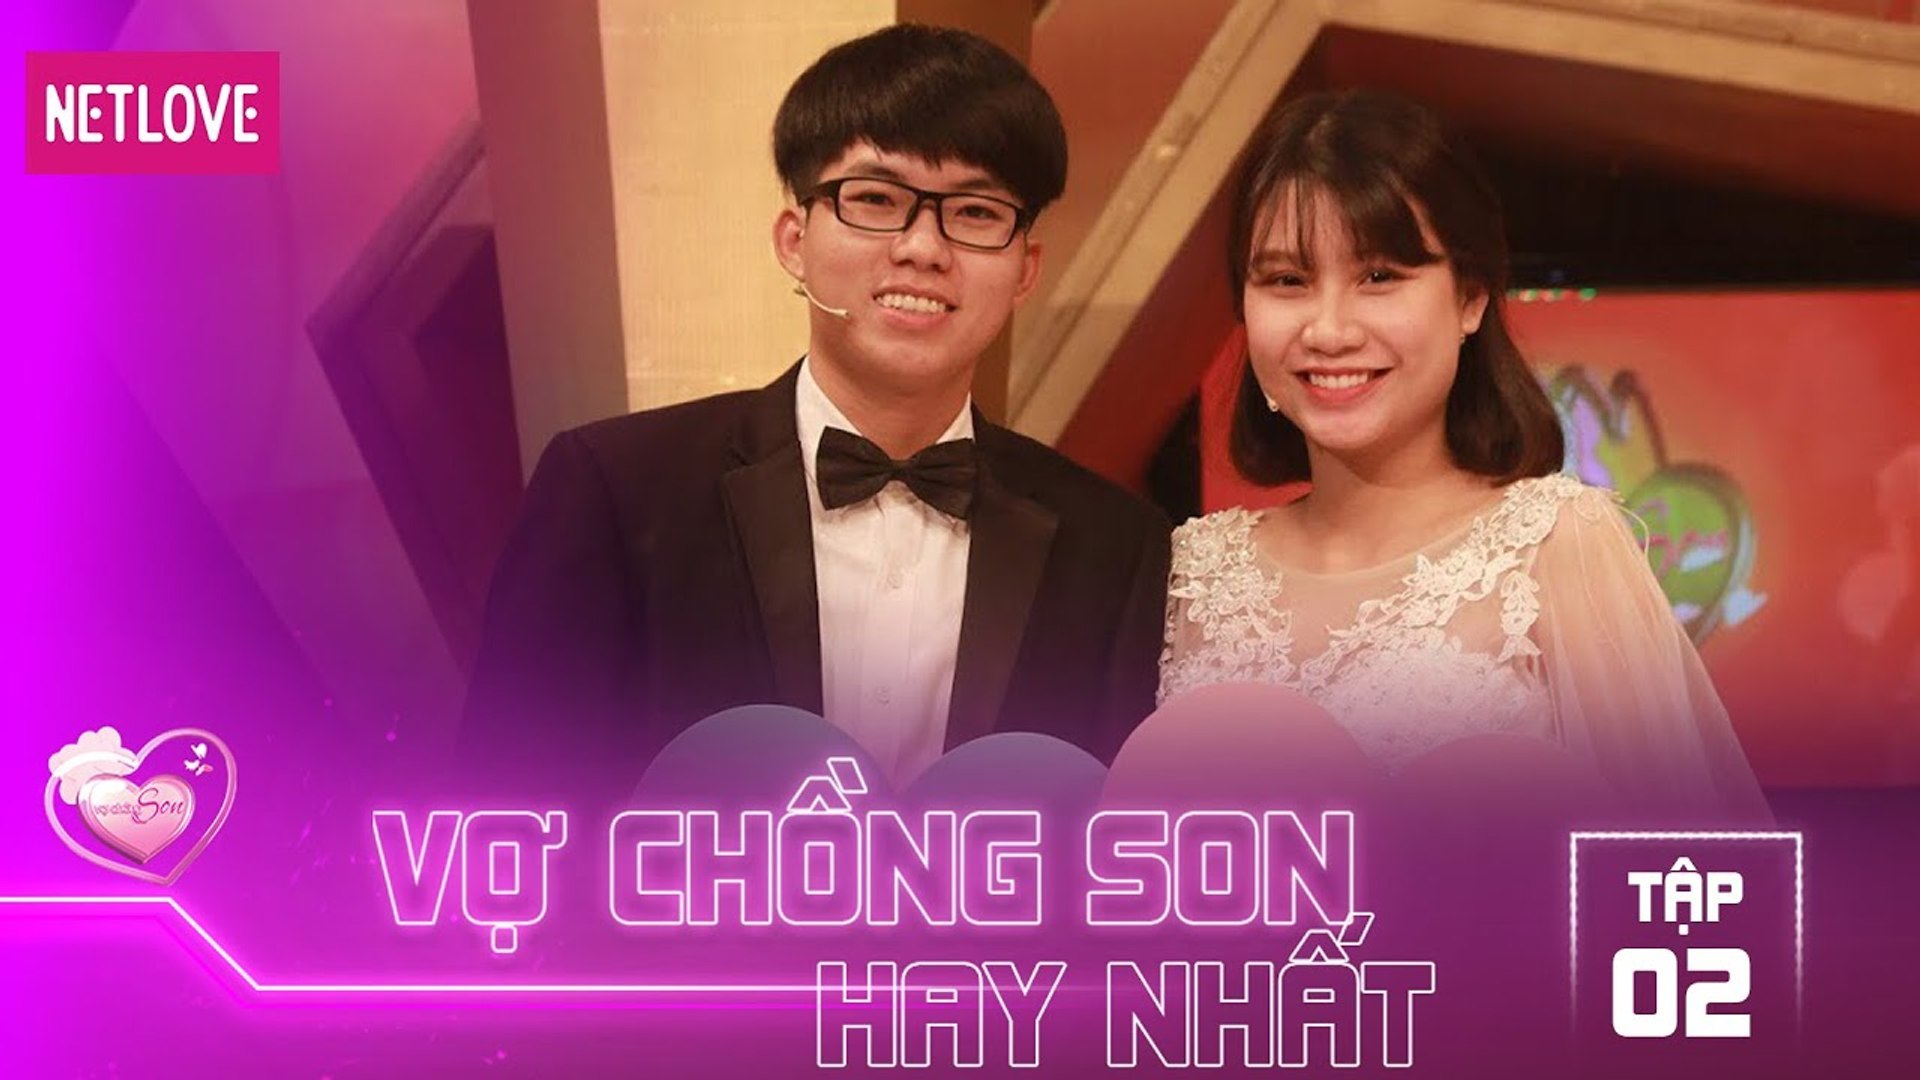 Vợ Chồng Son Hay Nhất - Tập 02: Đặng Văn Khánh - Trần Ngọc Thanh Thanh